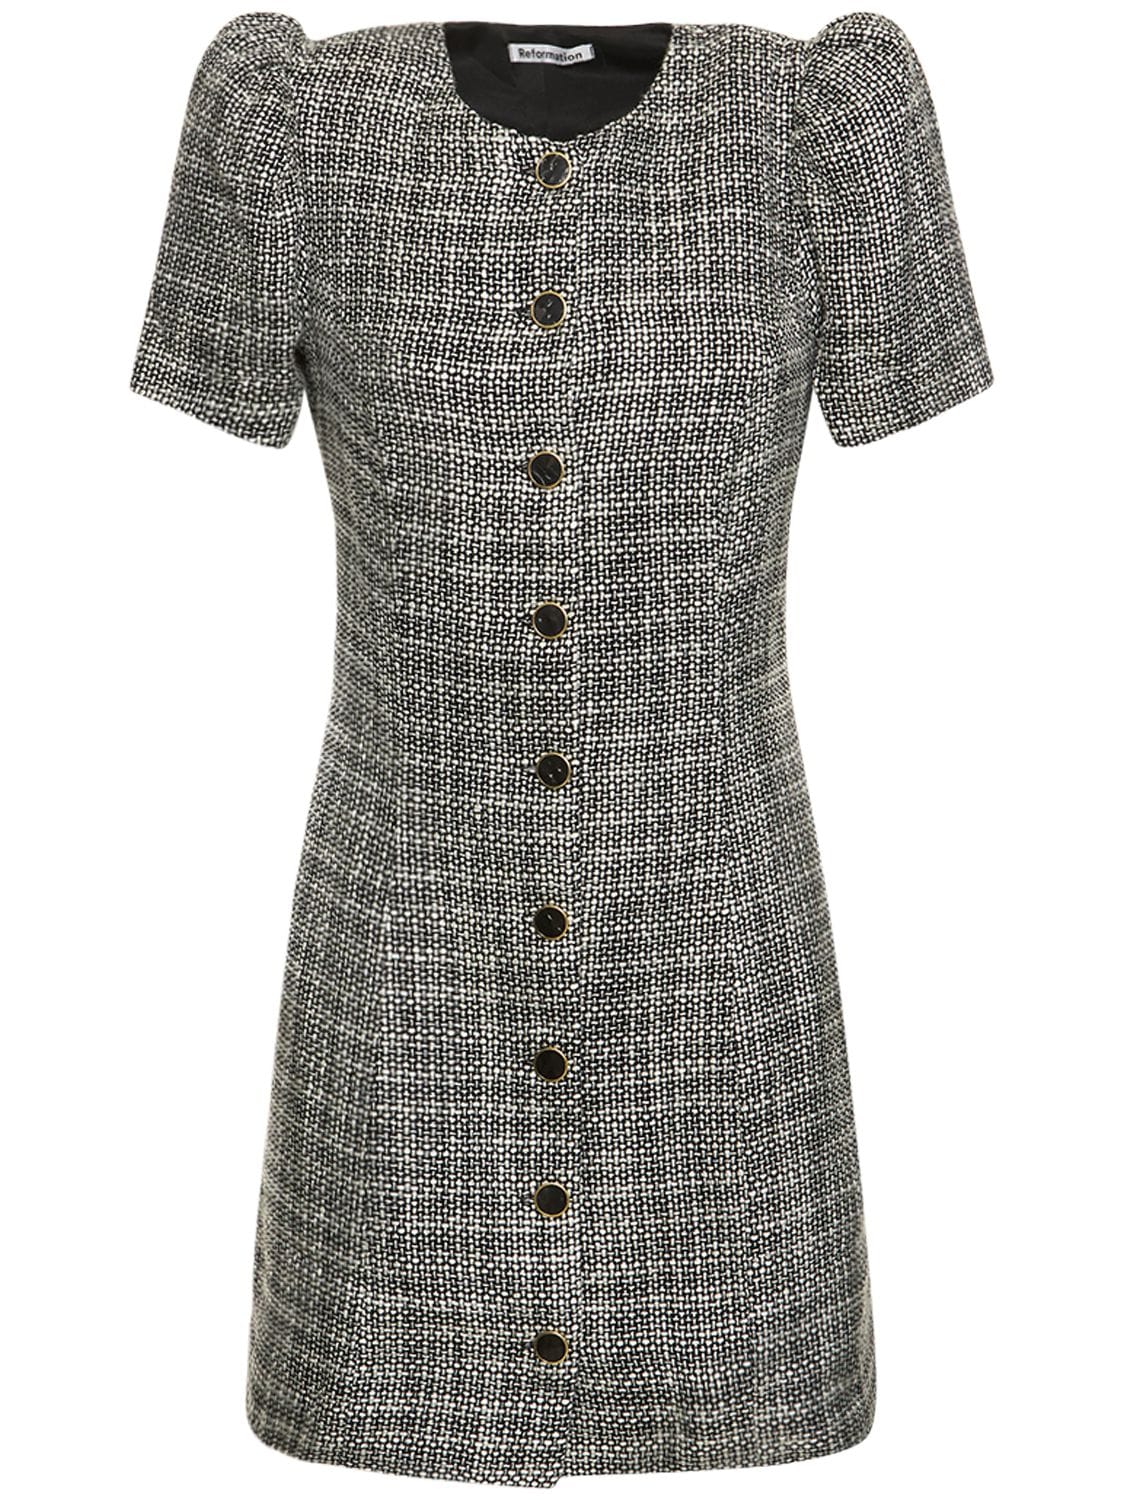 Image of Olivette Tweed Mini Dress